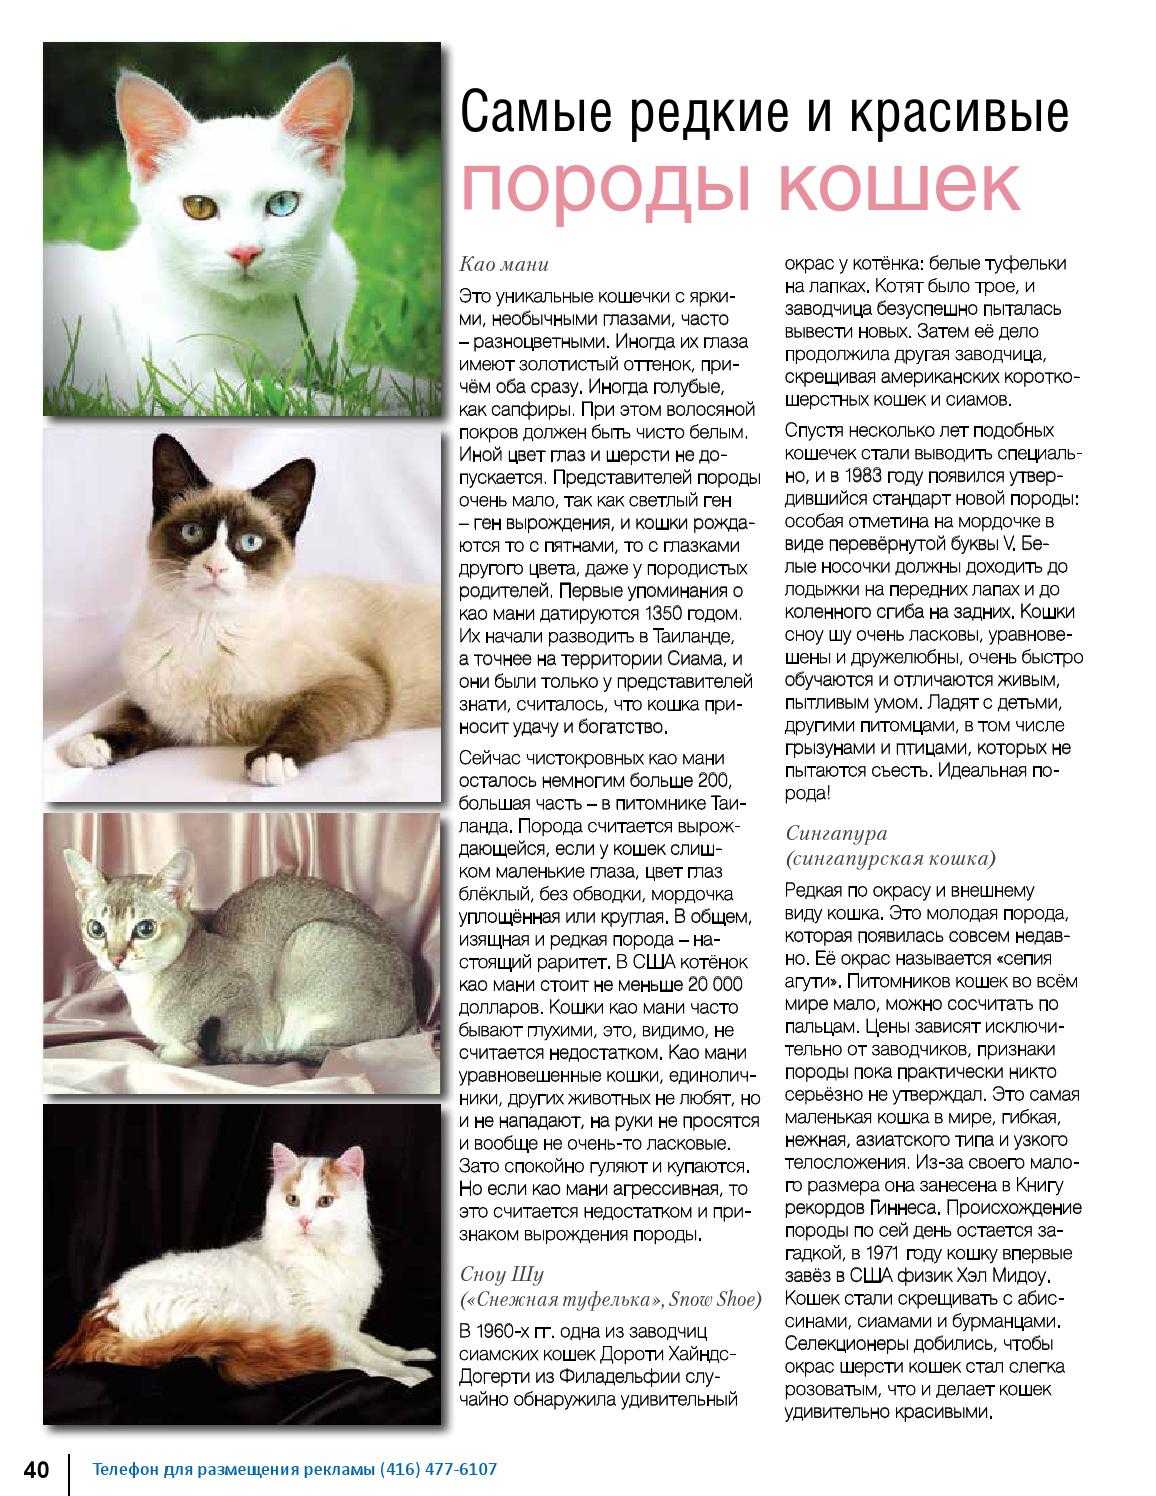 Порода кошек као-мани: фото с описанием - kotospravka